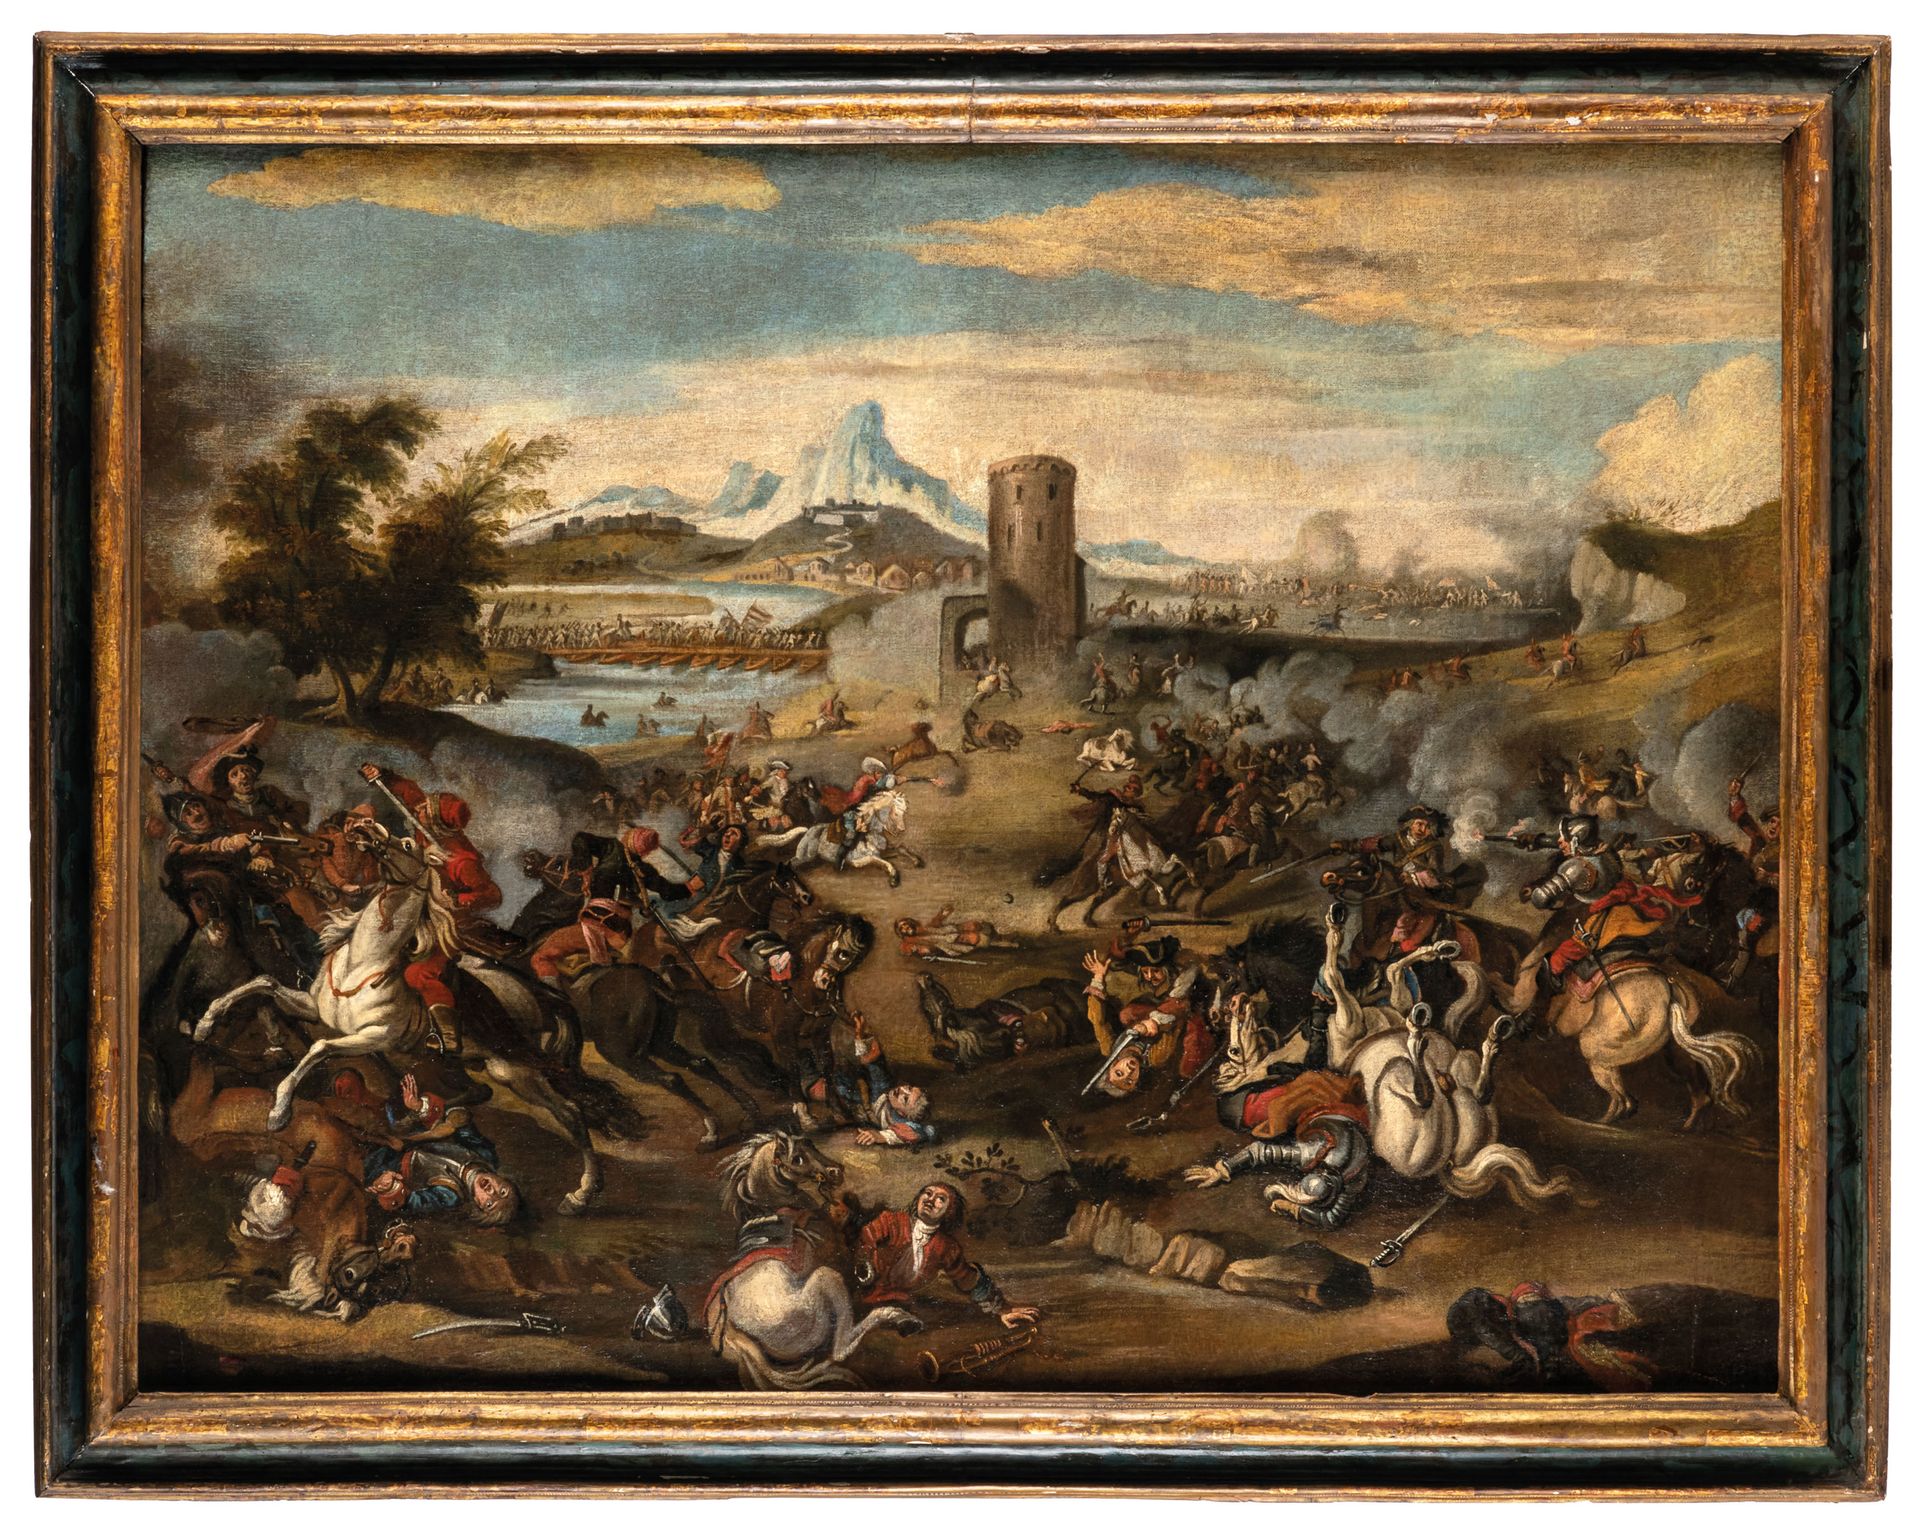 PITTORE DEL XVIII SECOLO Battle
Oil on canvas, cm 103X135